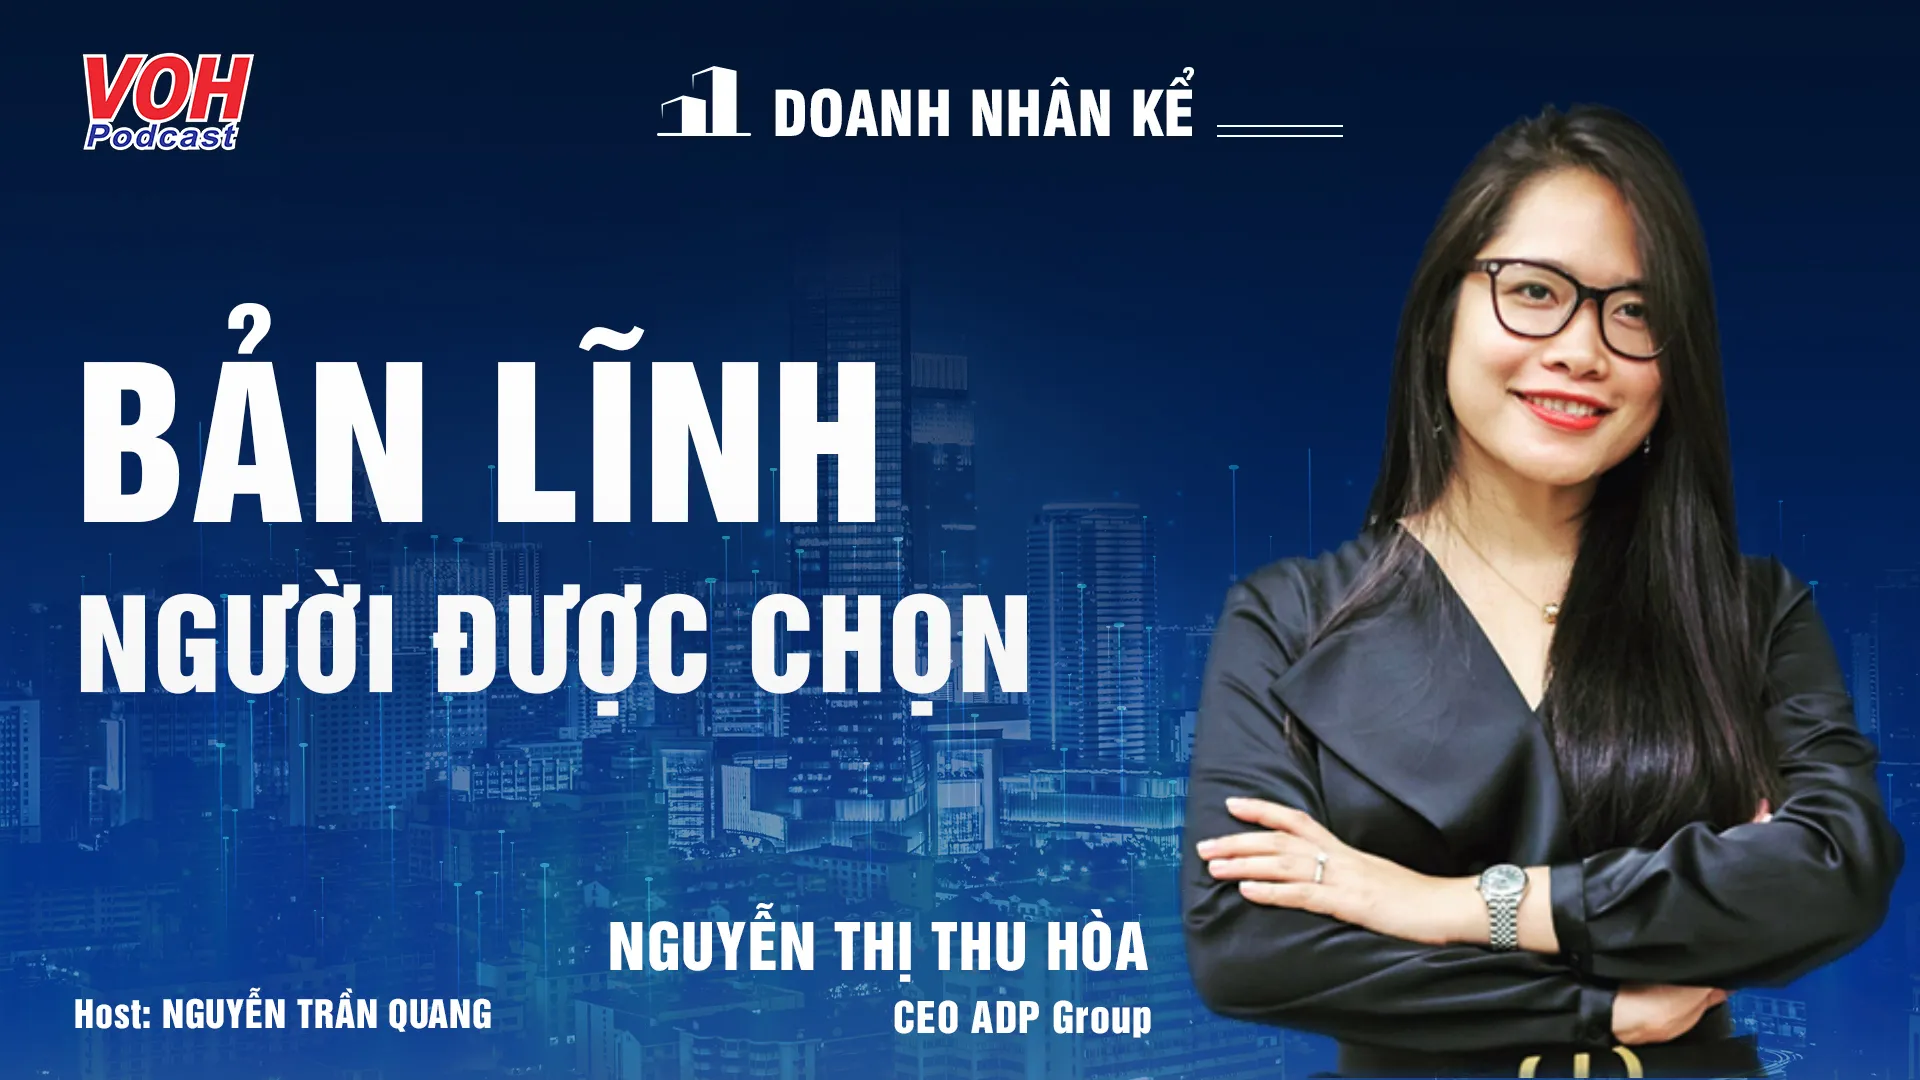 CEO Nguyễn Thị Thu Hòa: Sáng tạo hướng đến thực tiễn | DNK #9